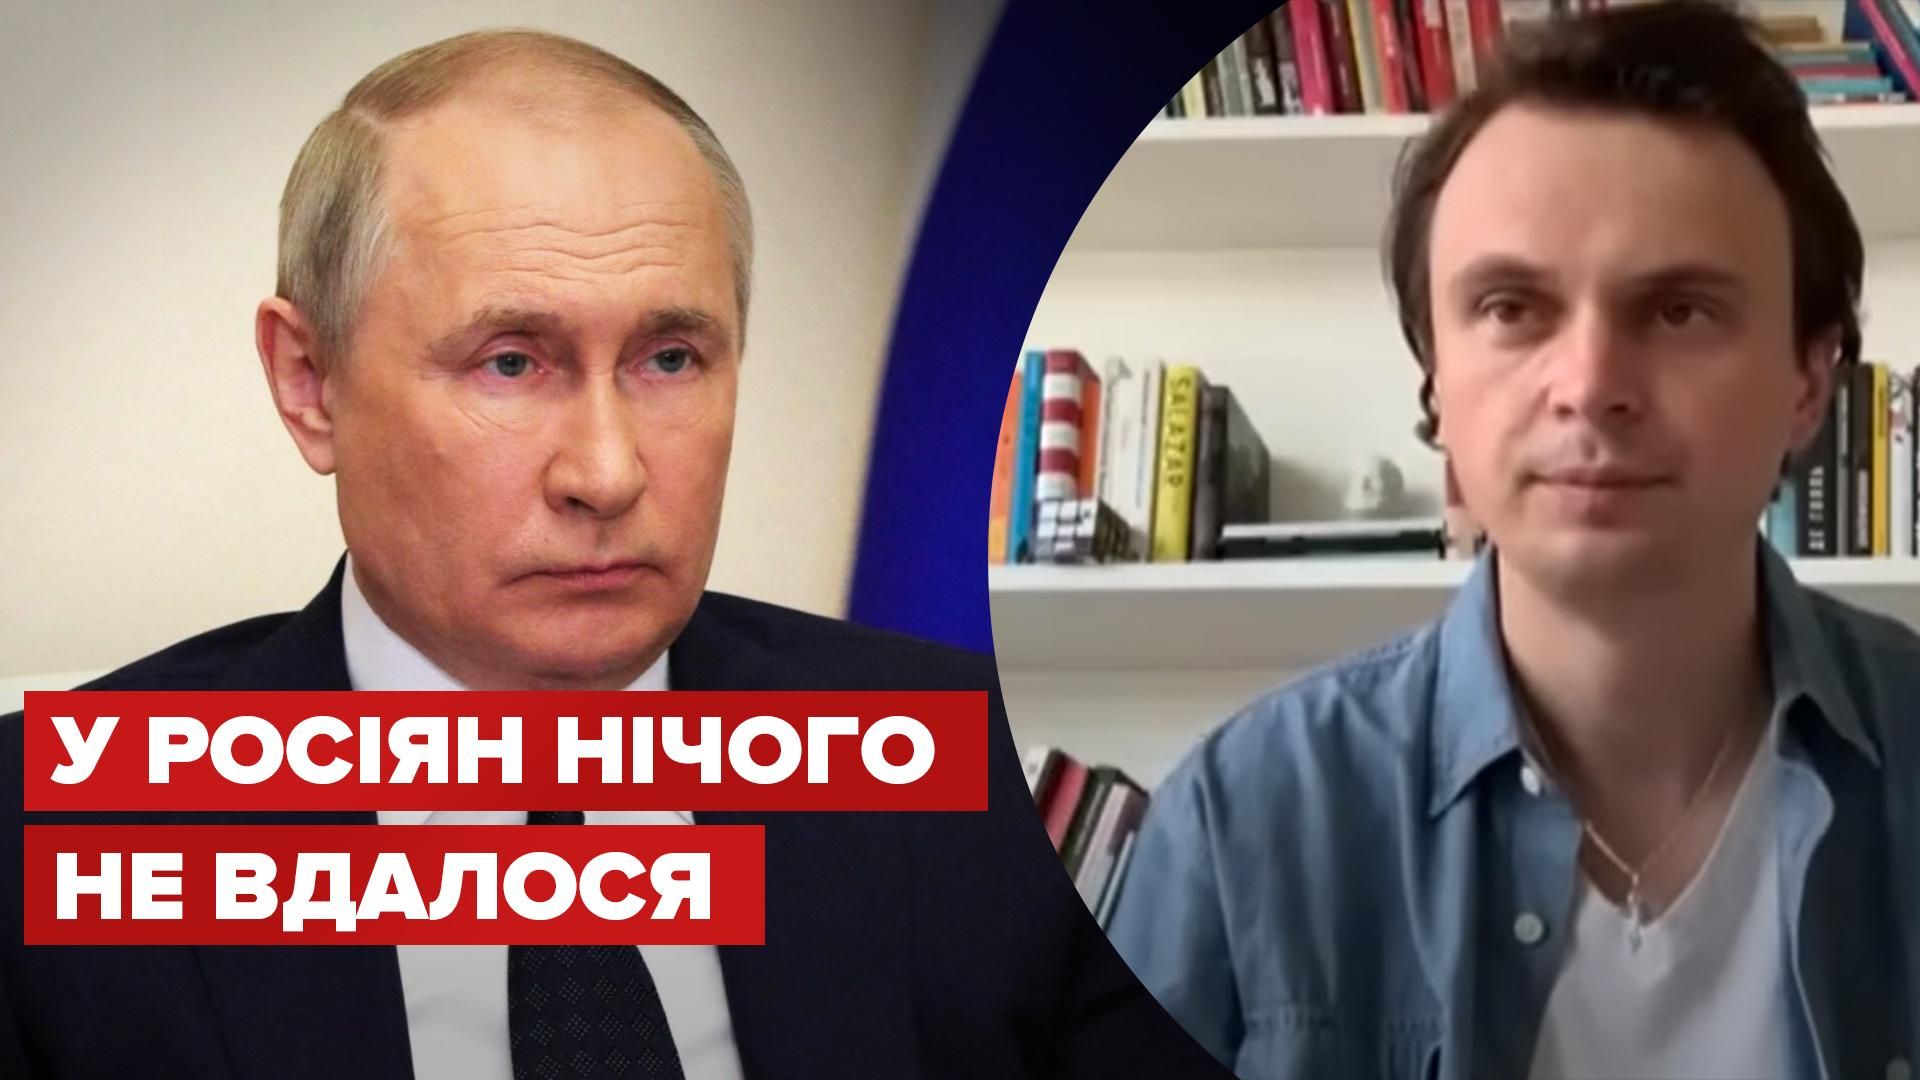 Давидюк о поражении Путина и изменении целей России